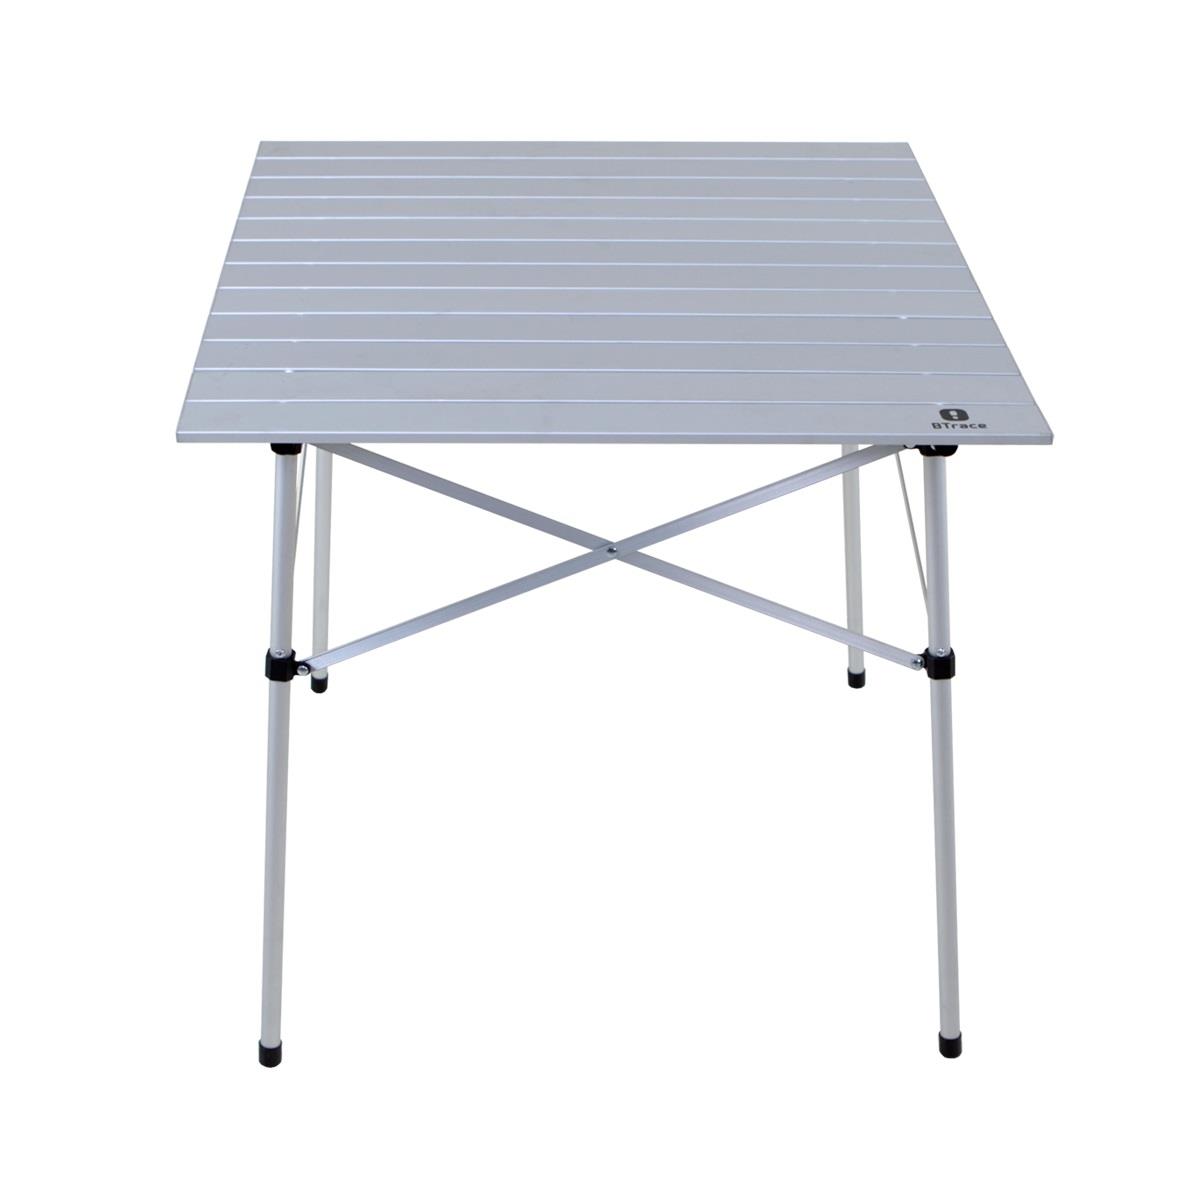 Стол складной Qick table 70 (F0500) BTrace технореал стол координатный алюминиевый с прижимами 330x95 мм ма320352011